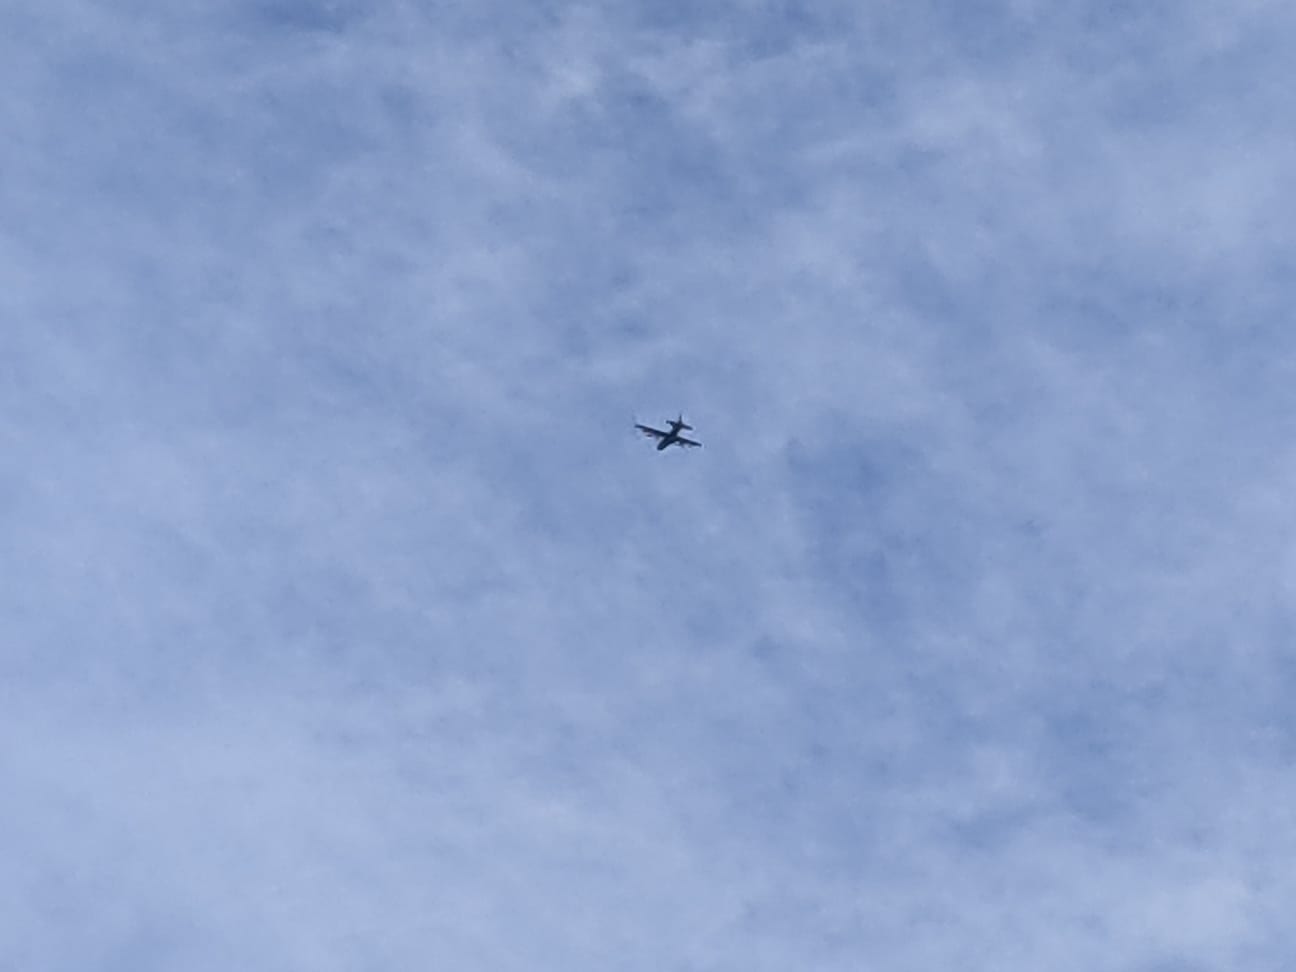 Gigantesco aereo nei cieli di Saronno e Tradate oggi pomeriggio: mistero risolto